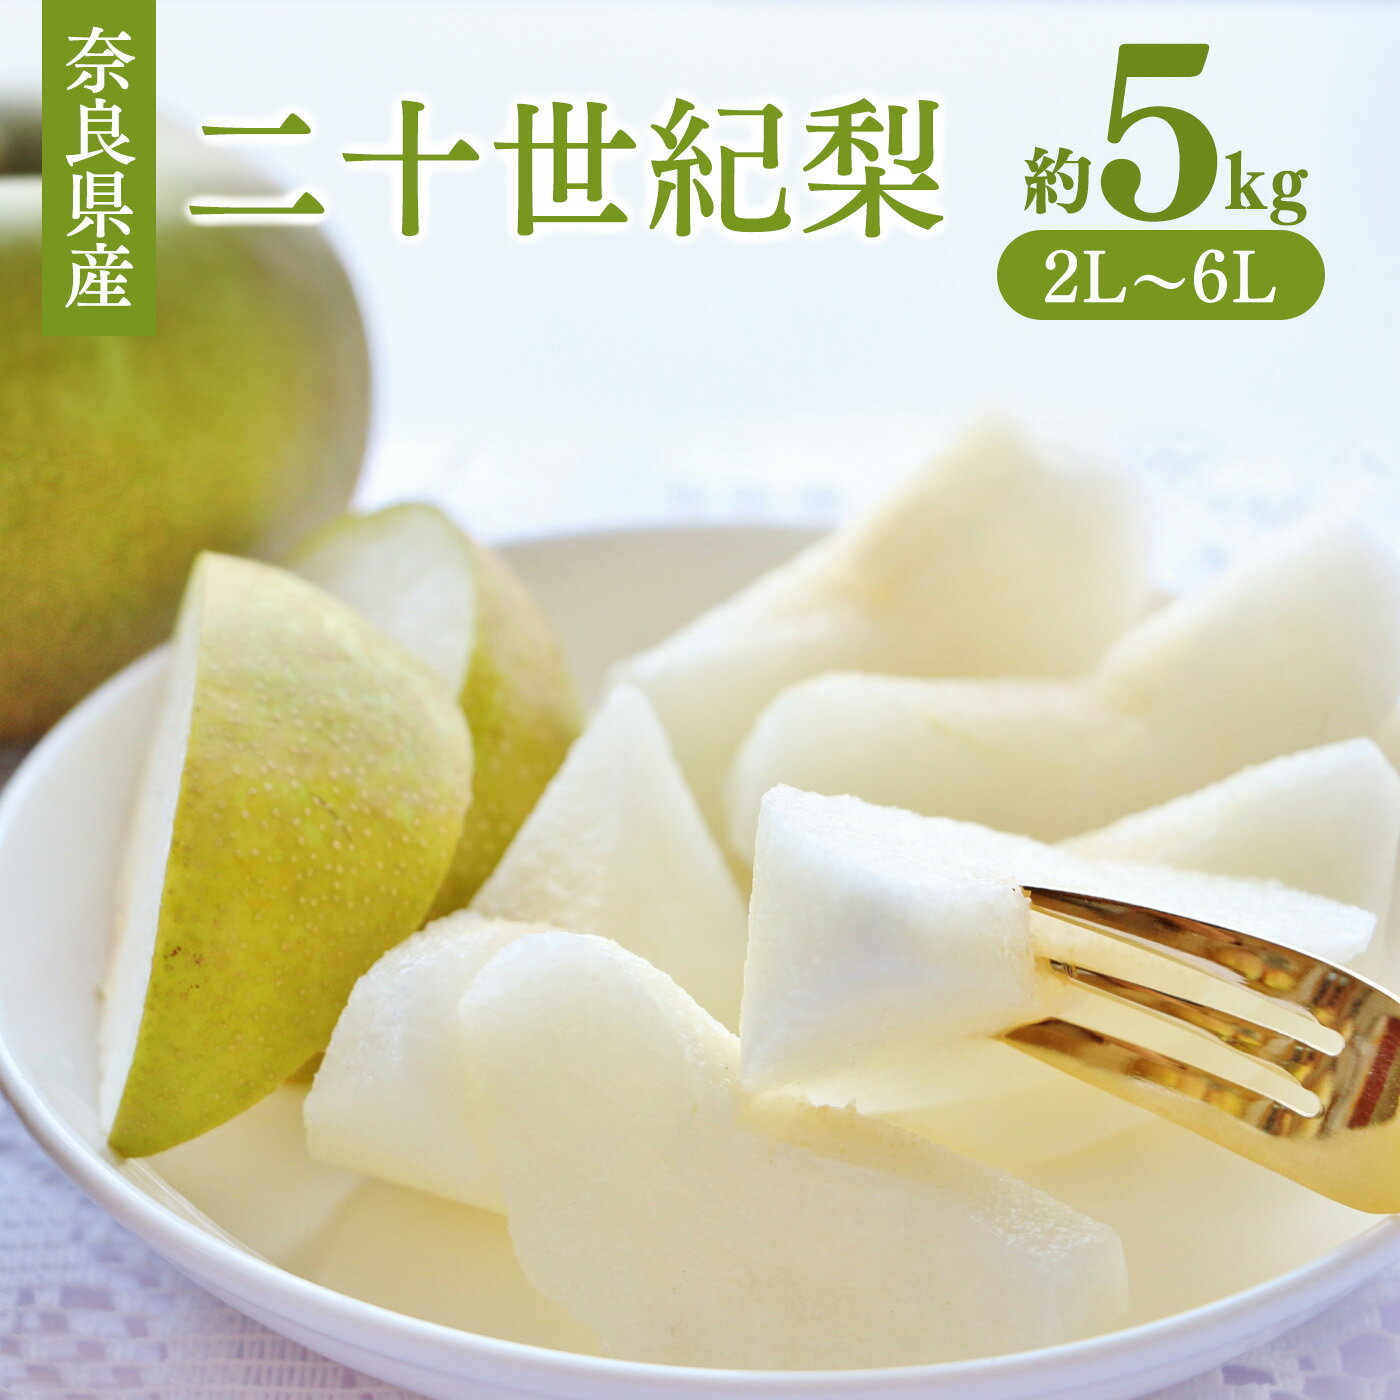 奈良の 二十世紀梨 ( 約5kg ) | フルーツ くだもの 果物 なし ナシ 梨 奈良県 五條市 二十世紀 20世紀